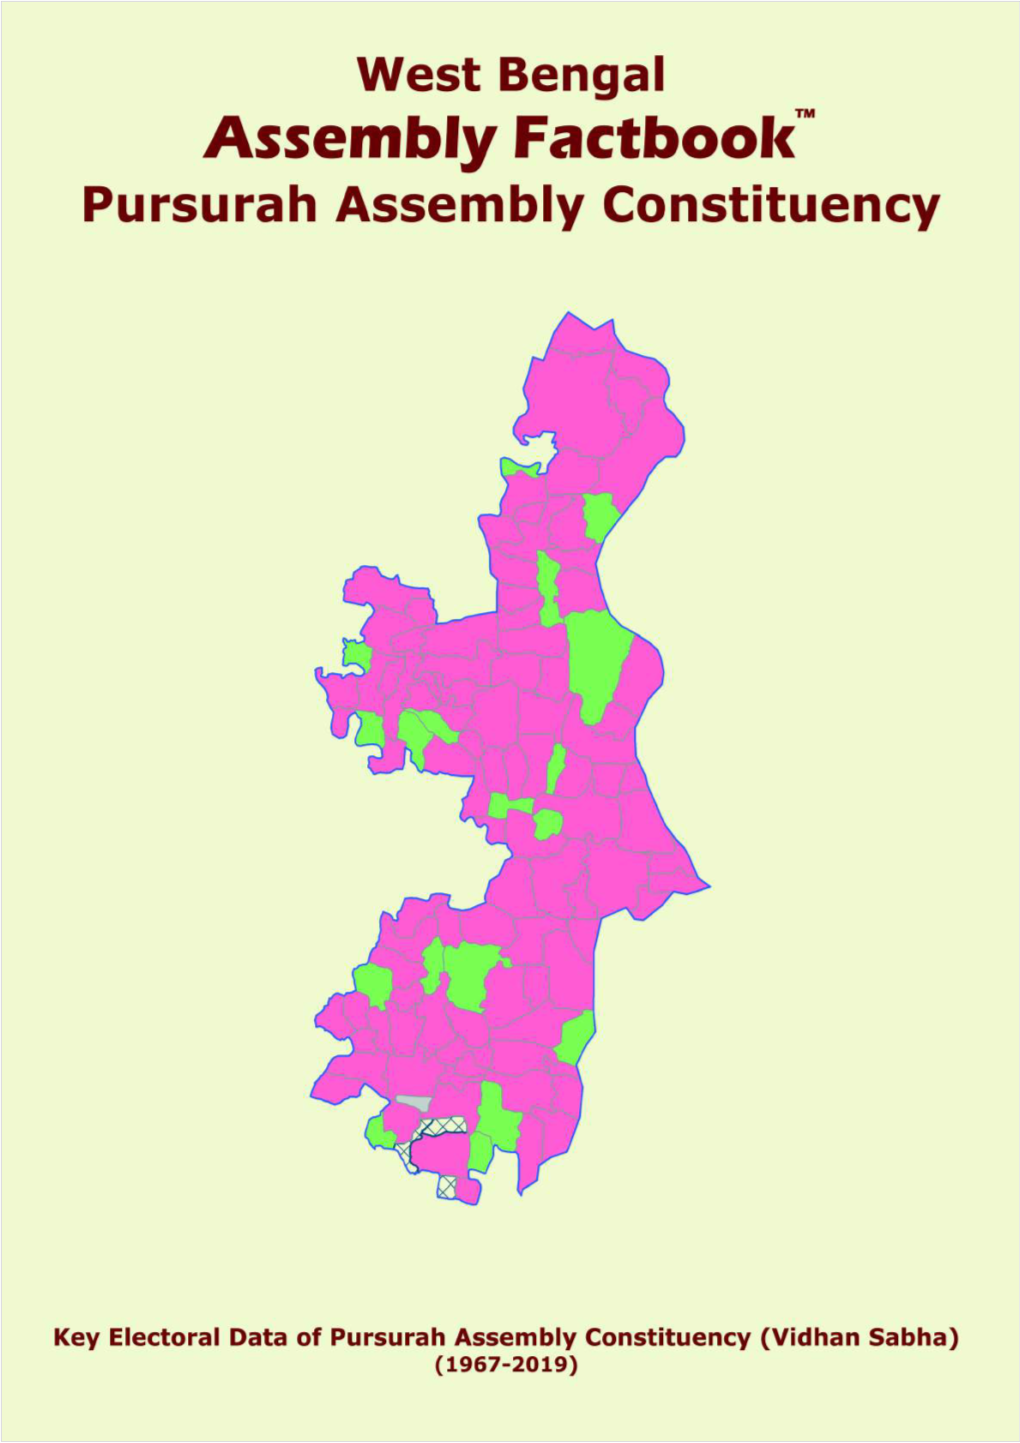 Pursurah Assembly West Bengal Factbook